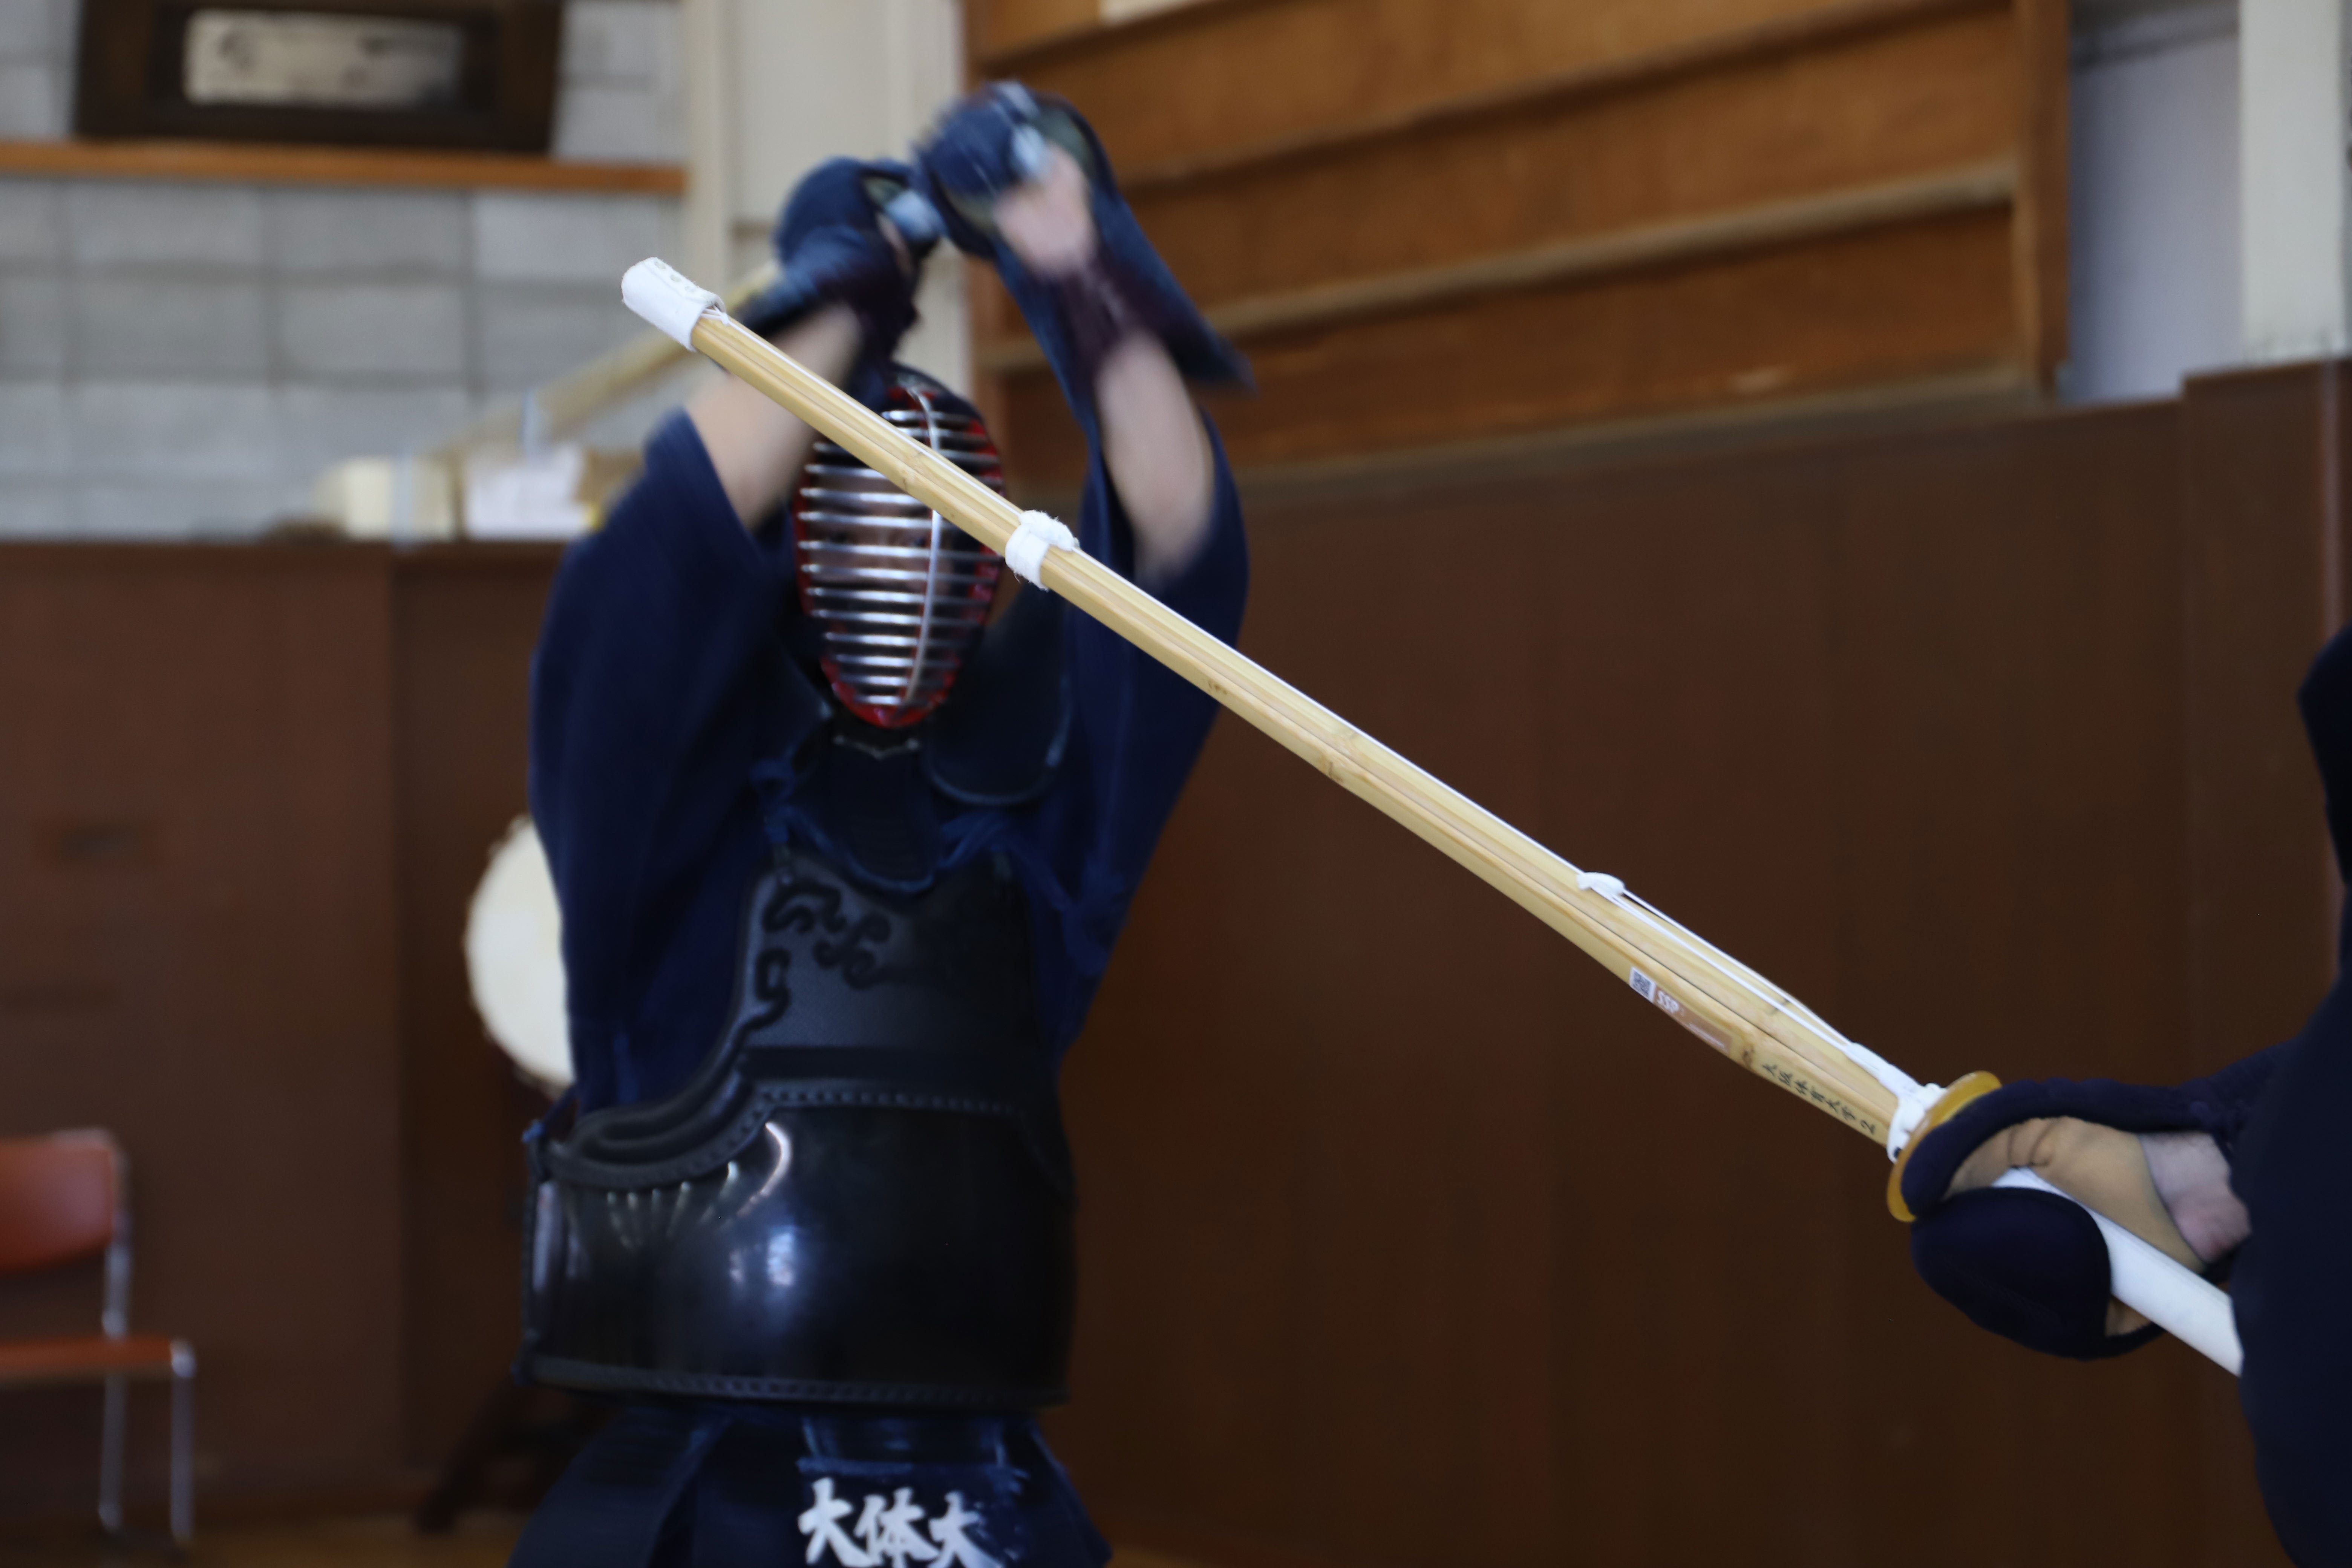 Cultivate the samurai spirit through kendo